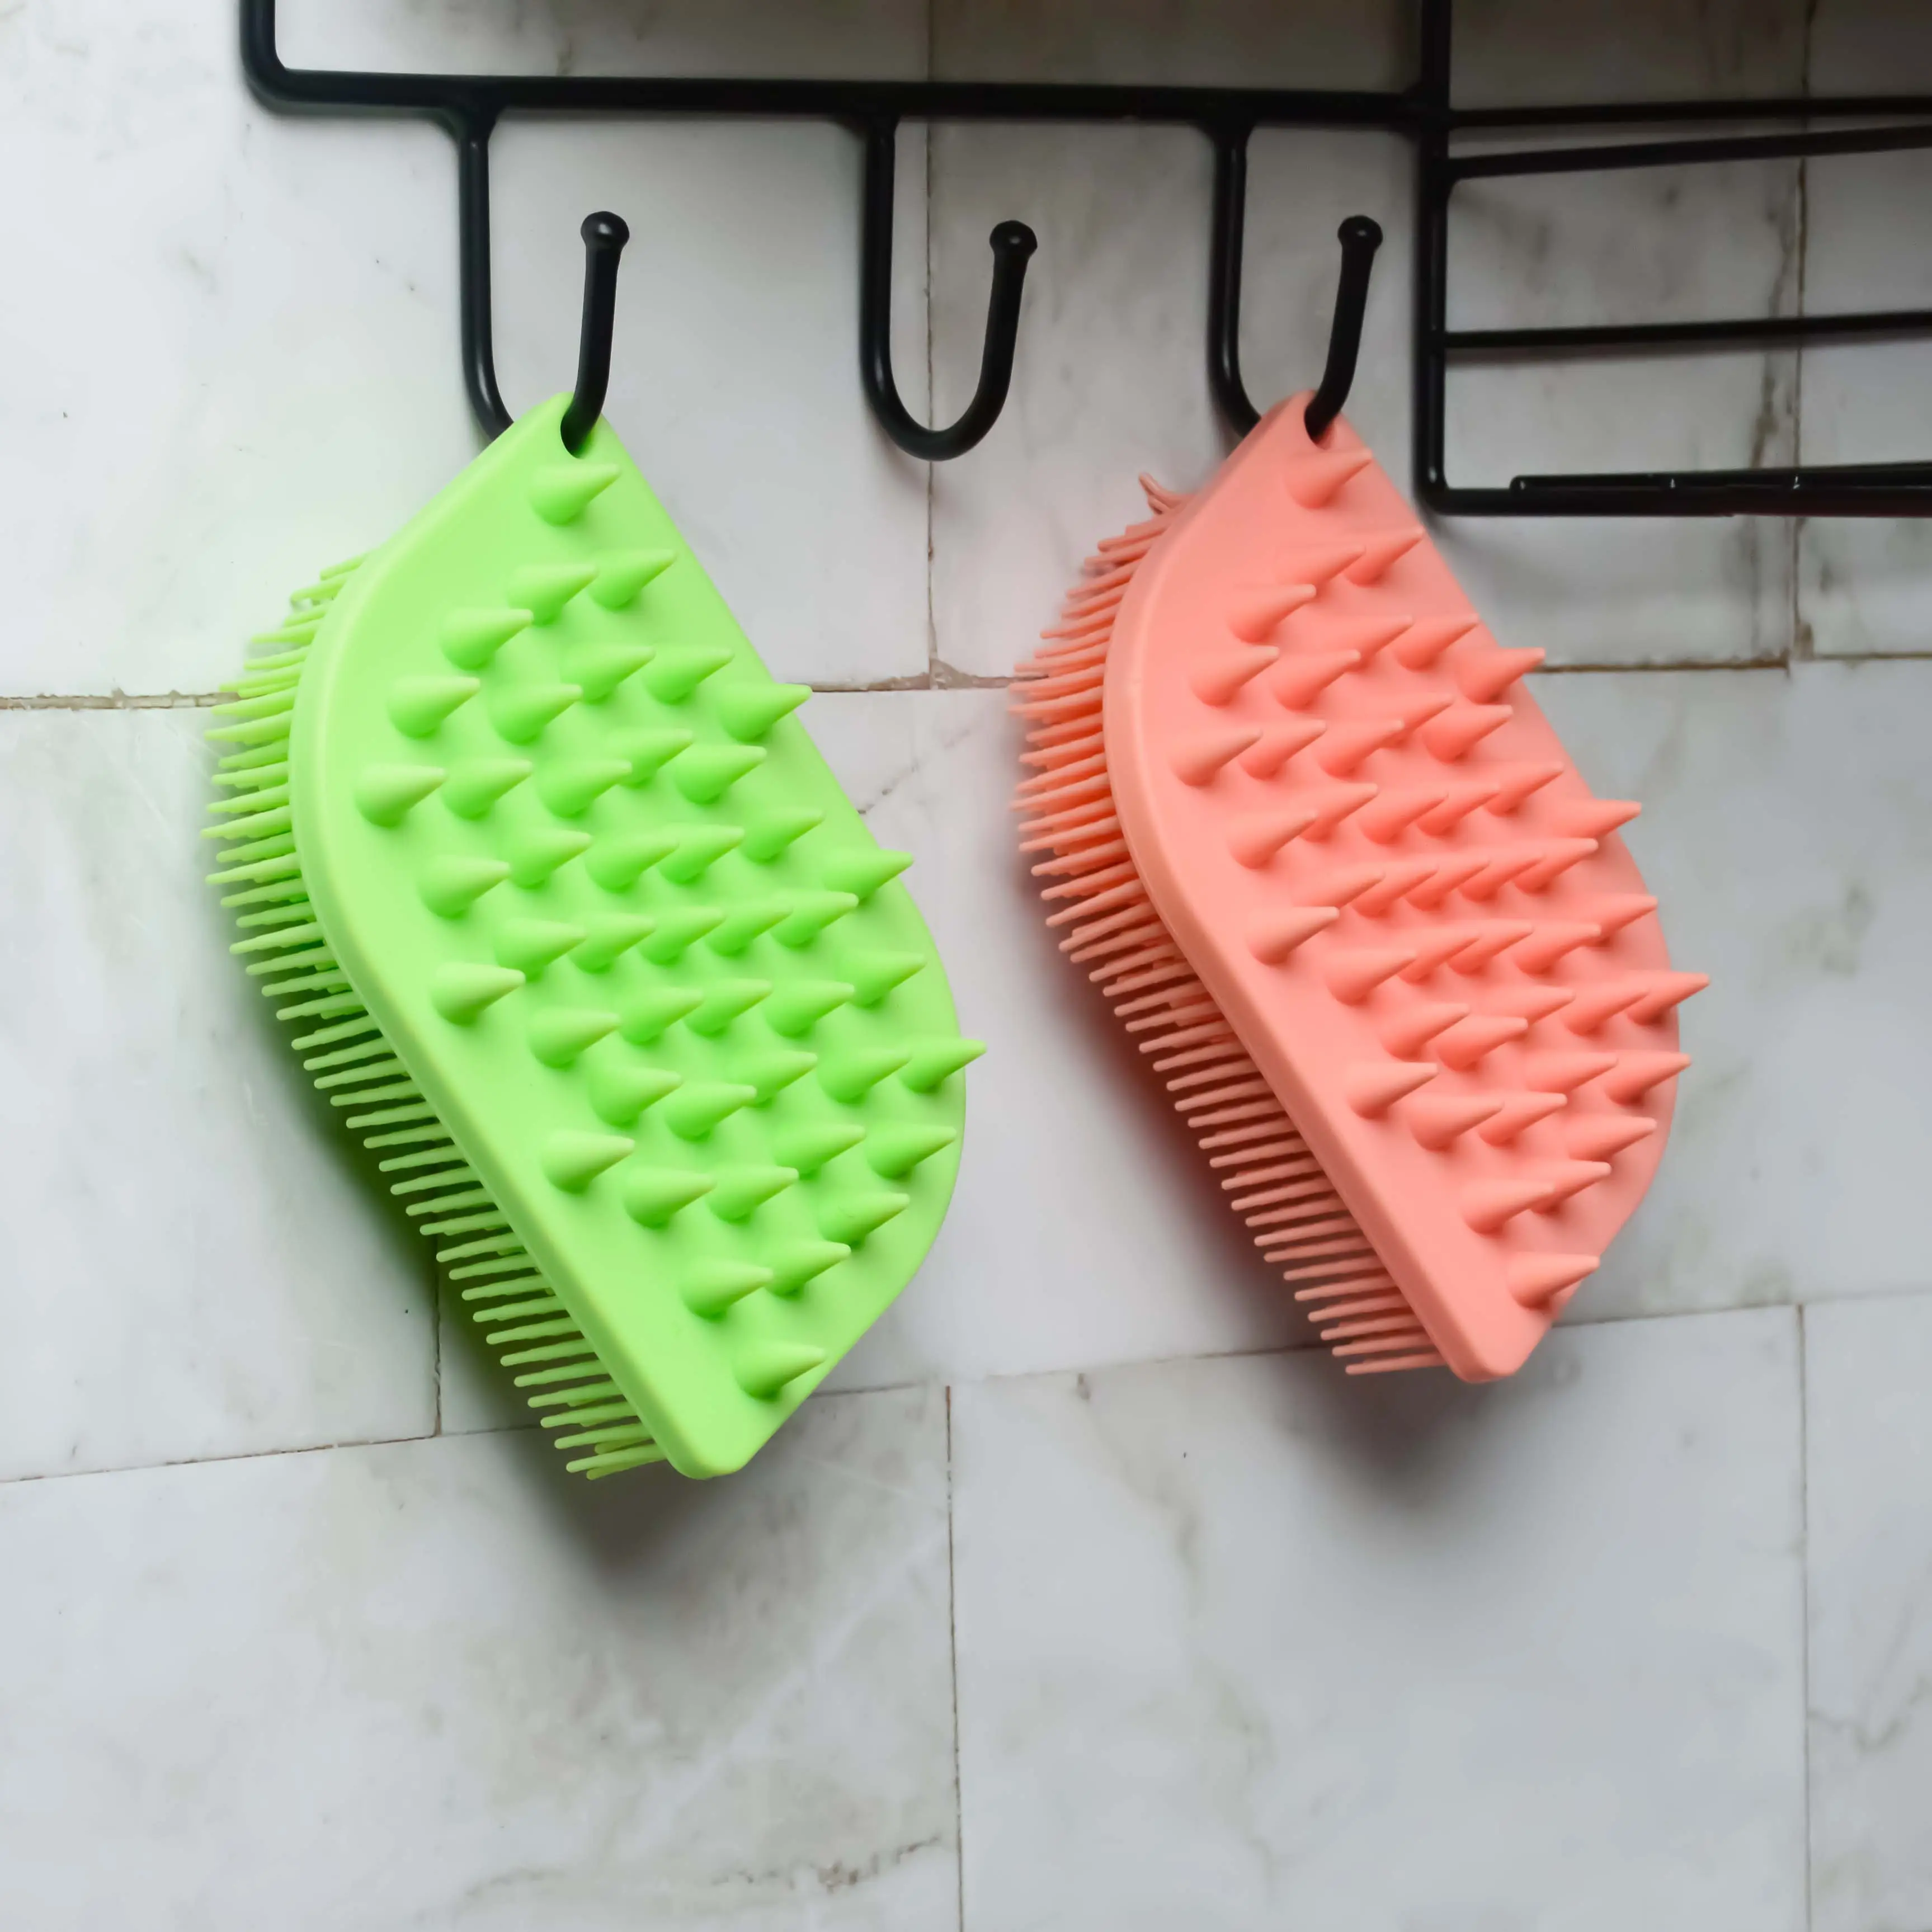 Silikon-Gehäusepeeling Loofah weiches peeling-Gehäusebad Dusche-Pug für empfindliche Kinder Frauen Männer alle Hauttypen